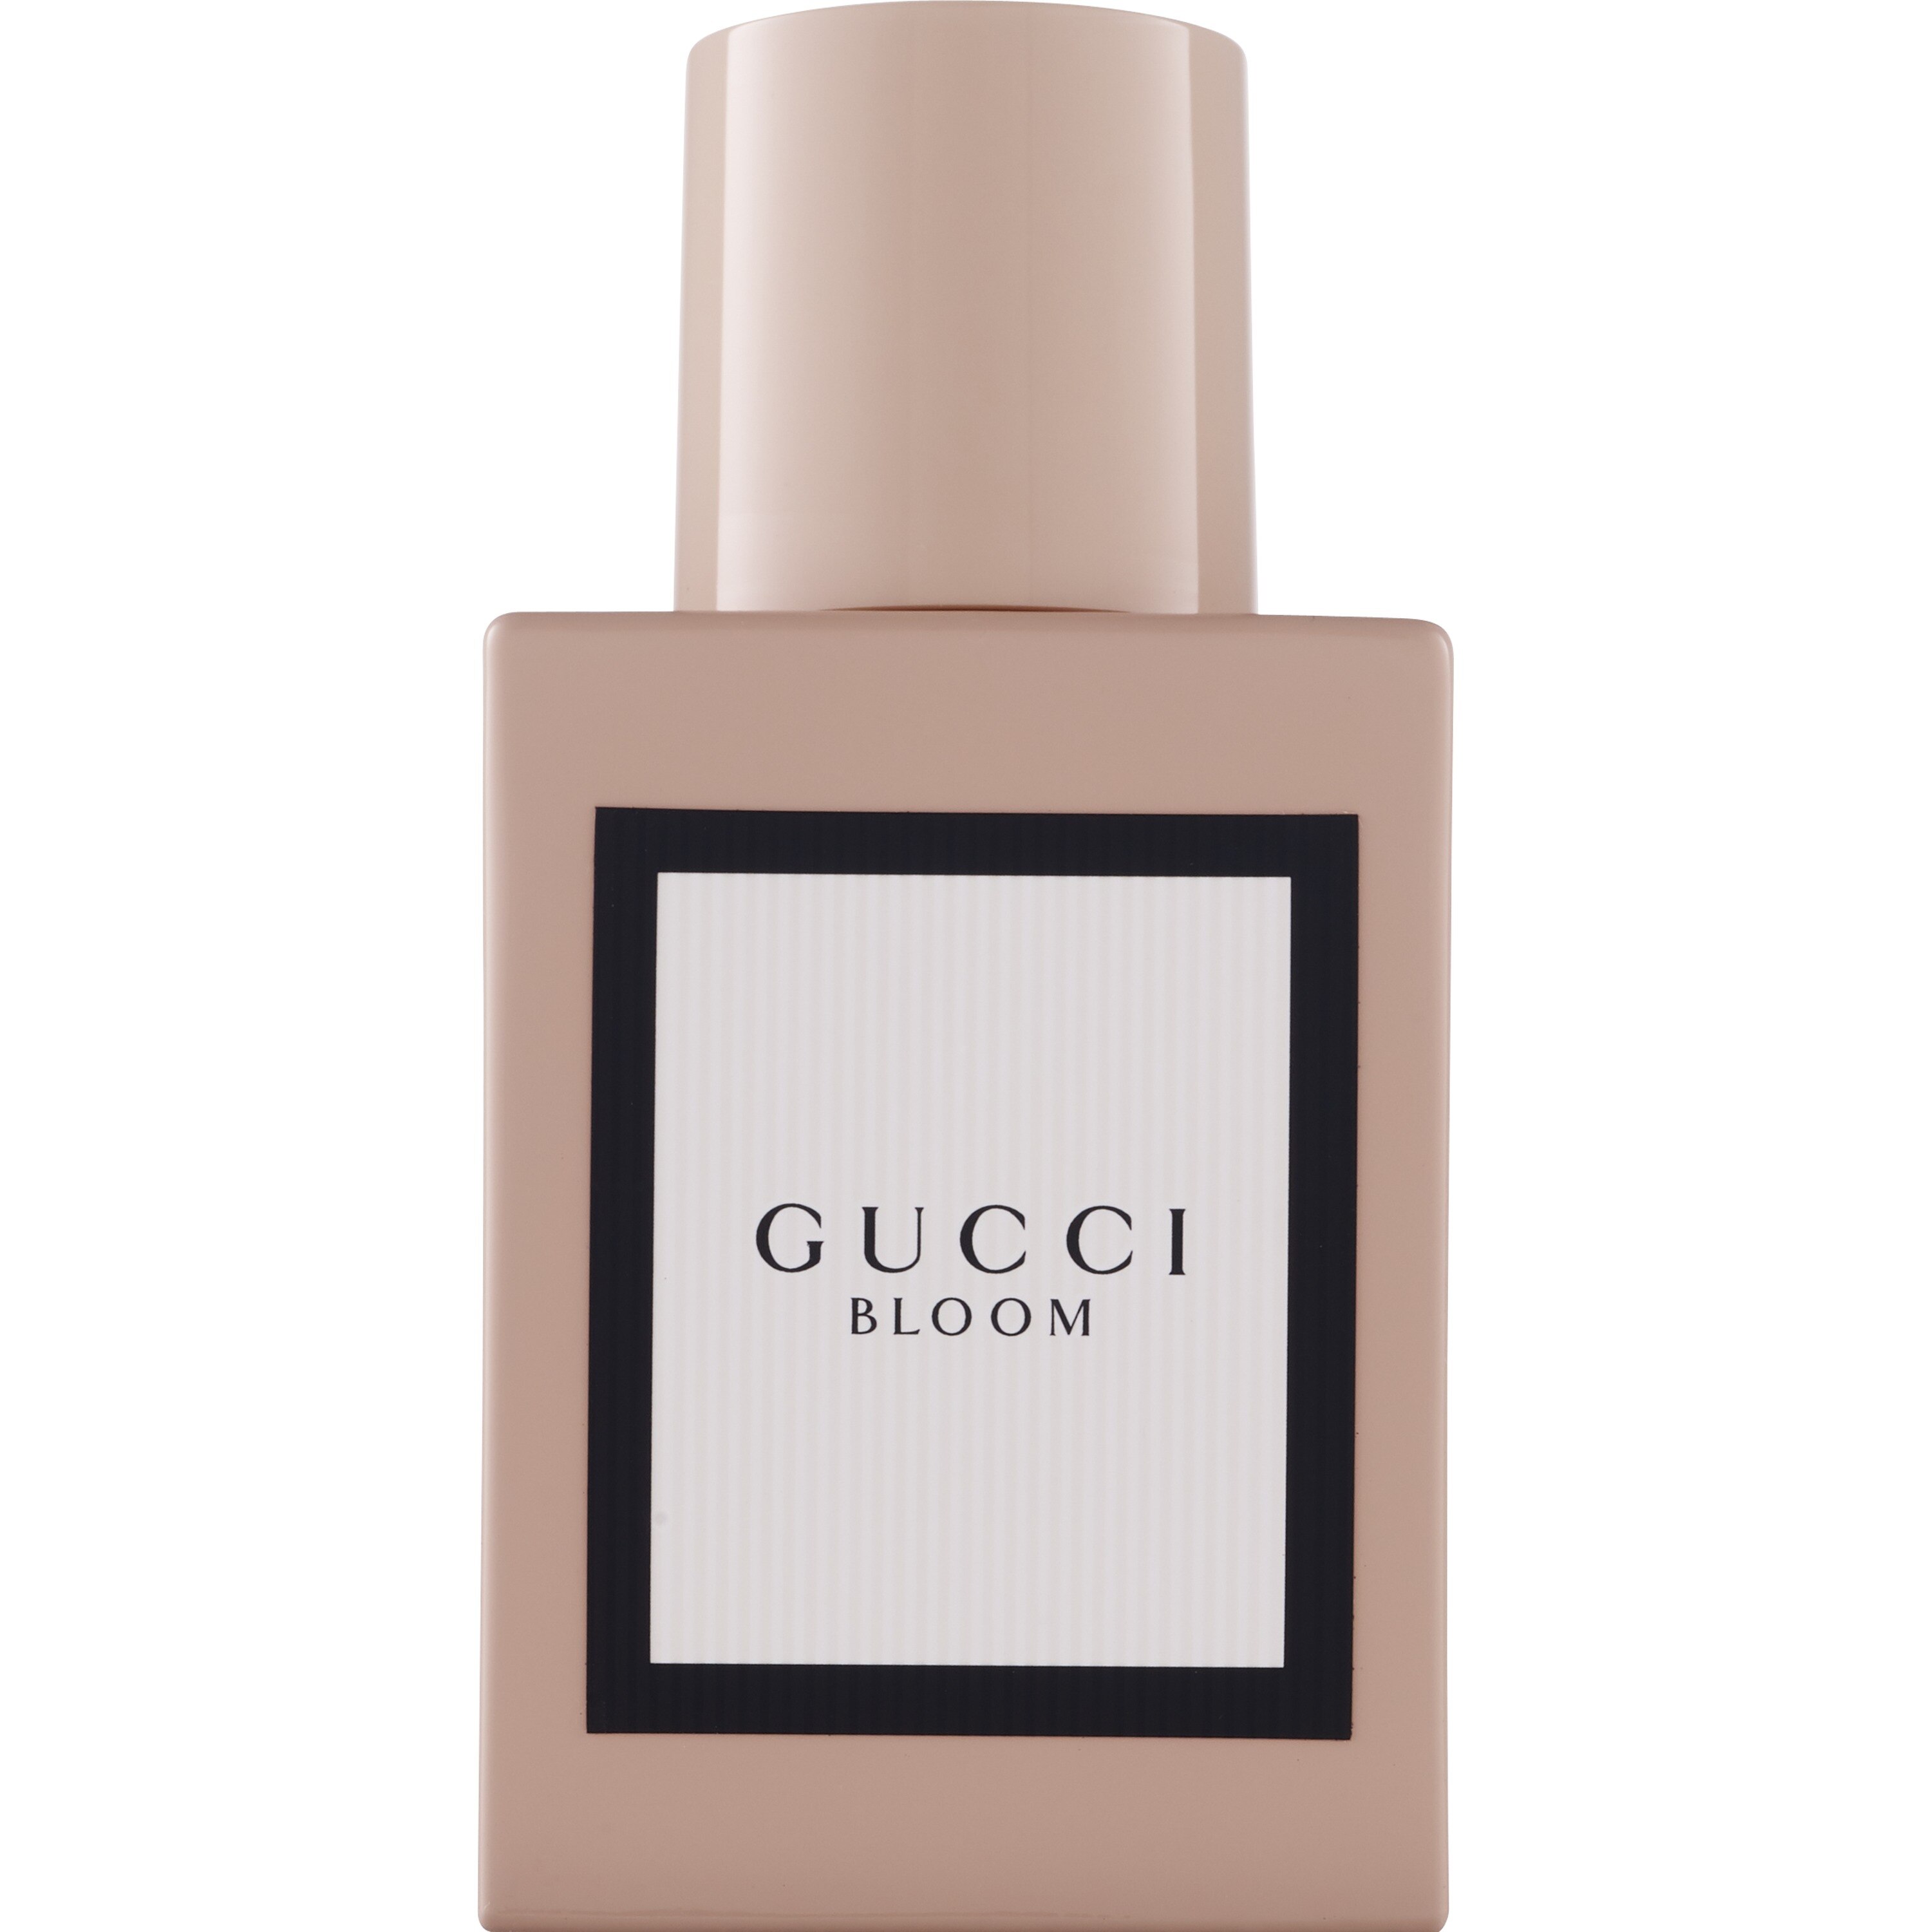 Gucci Bloom for Women Eau de Parfum Natural Spray, 1 OZ